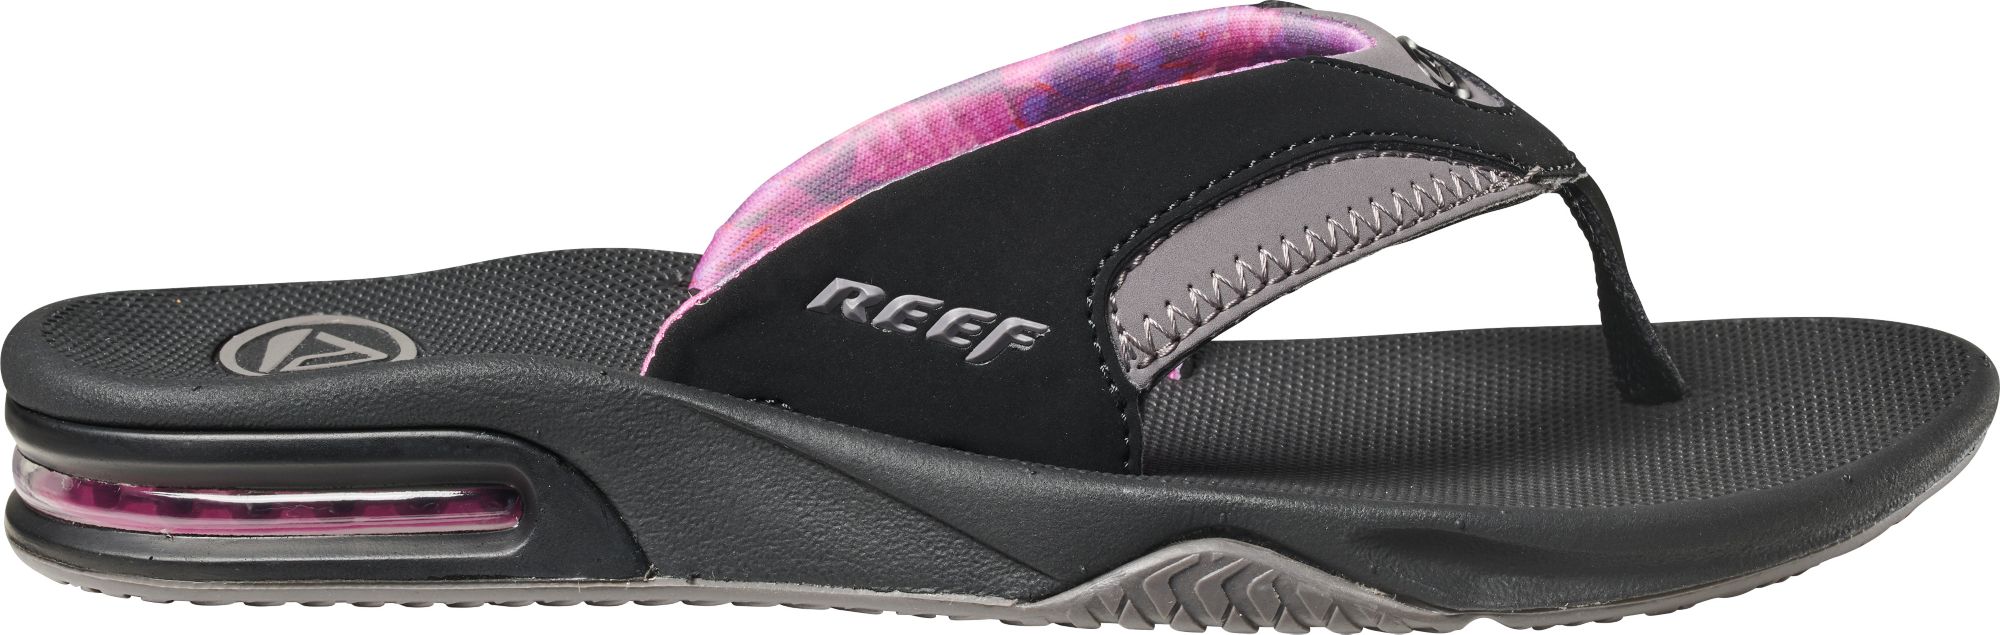 reef flip flops dicks